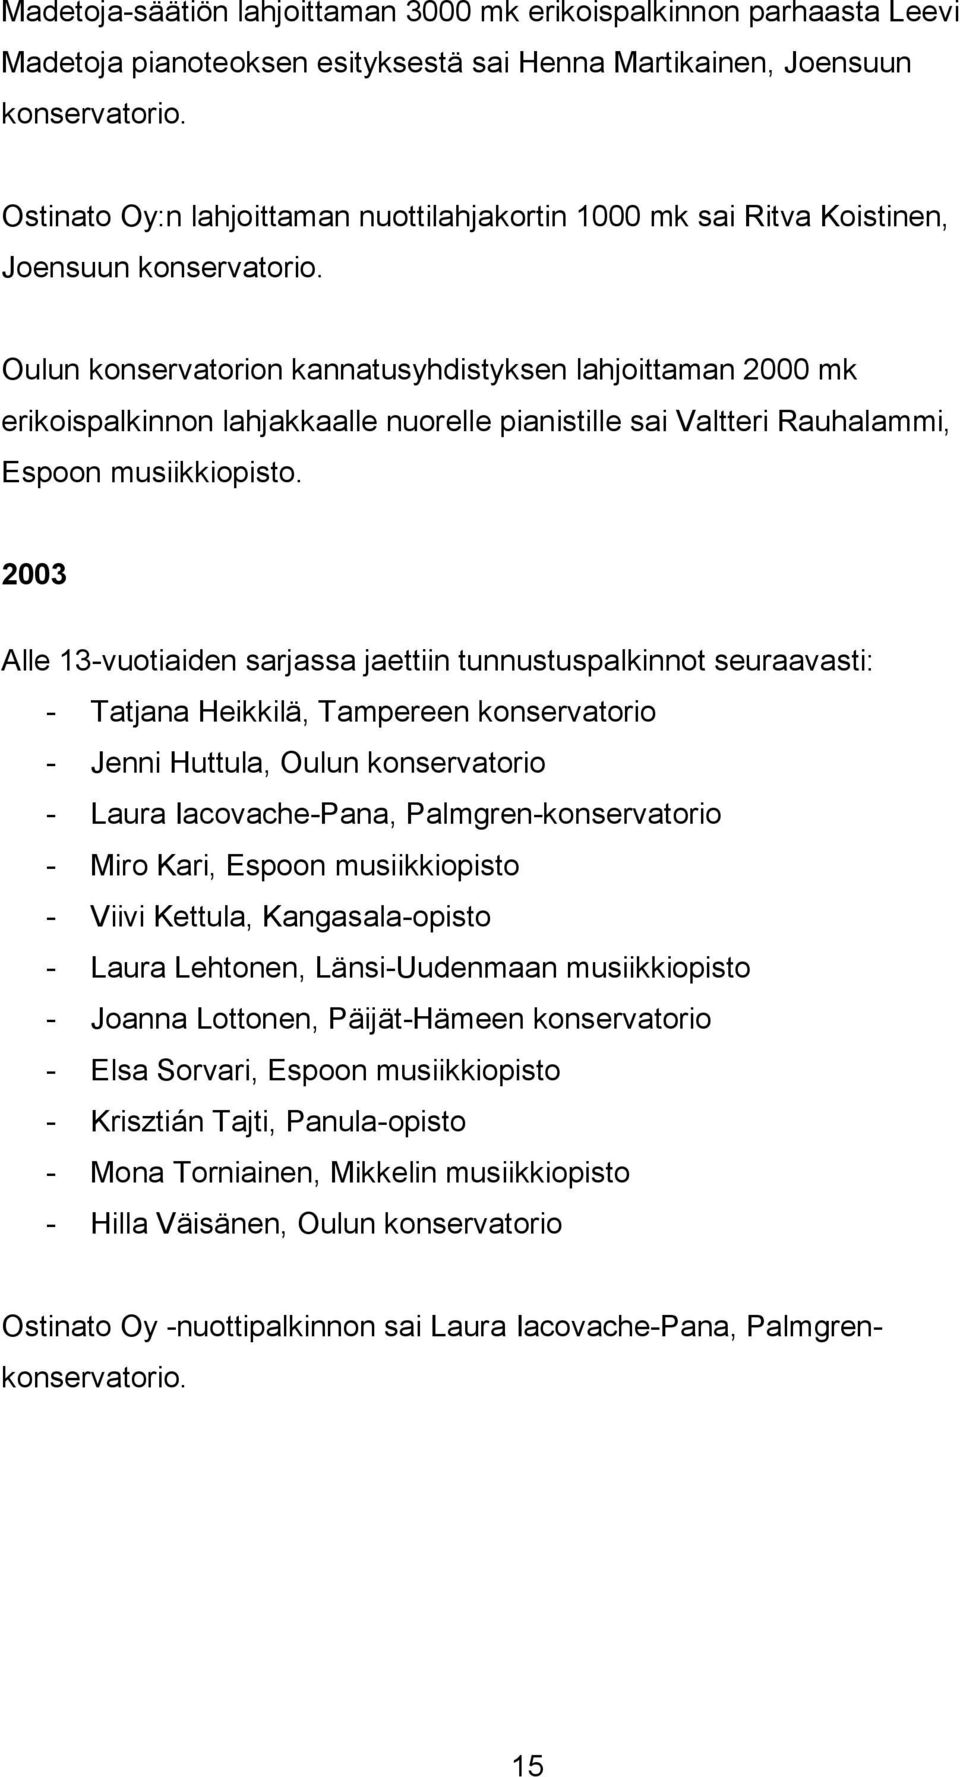 Oulun konservatorion kannatusyhdistyksen lahjoittaman 2000 mk erikoispalkinnon lahjakkaalle nuorelle pianistille sai Valtteri Rauhalammi, Espoon musiikkiopisto.